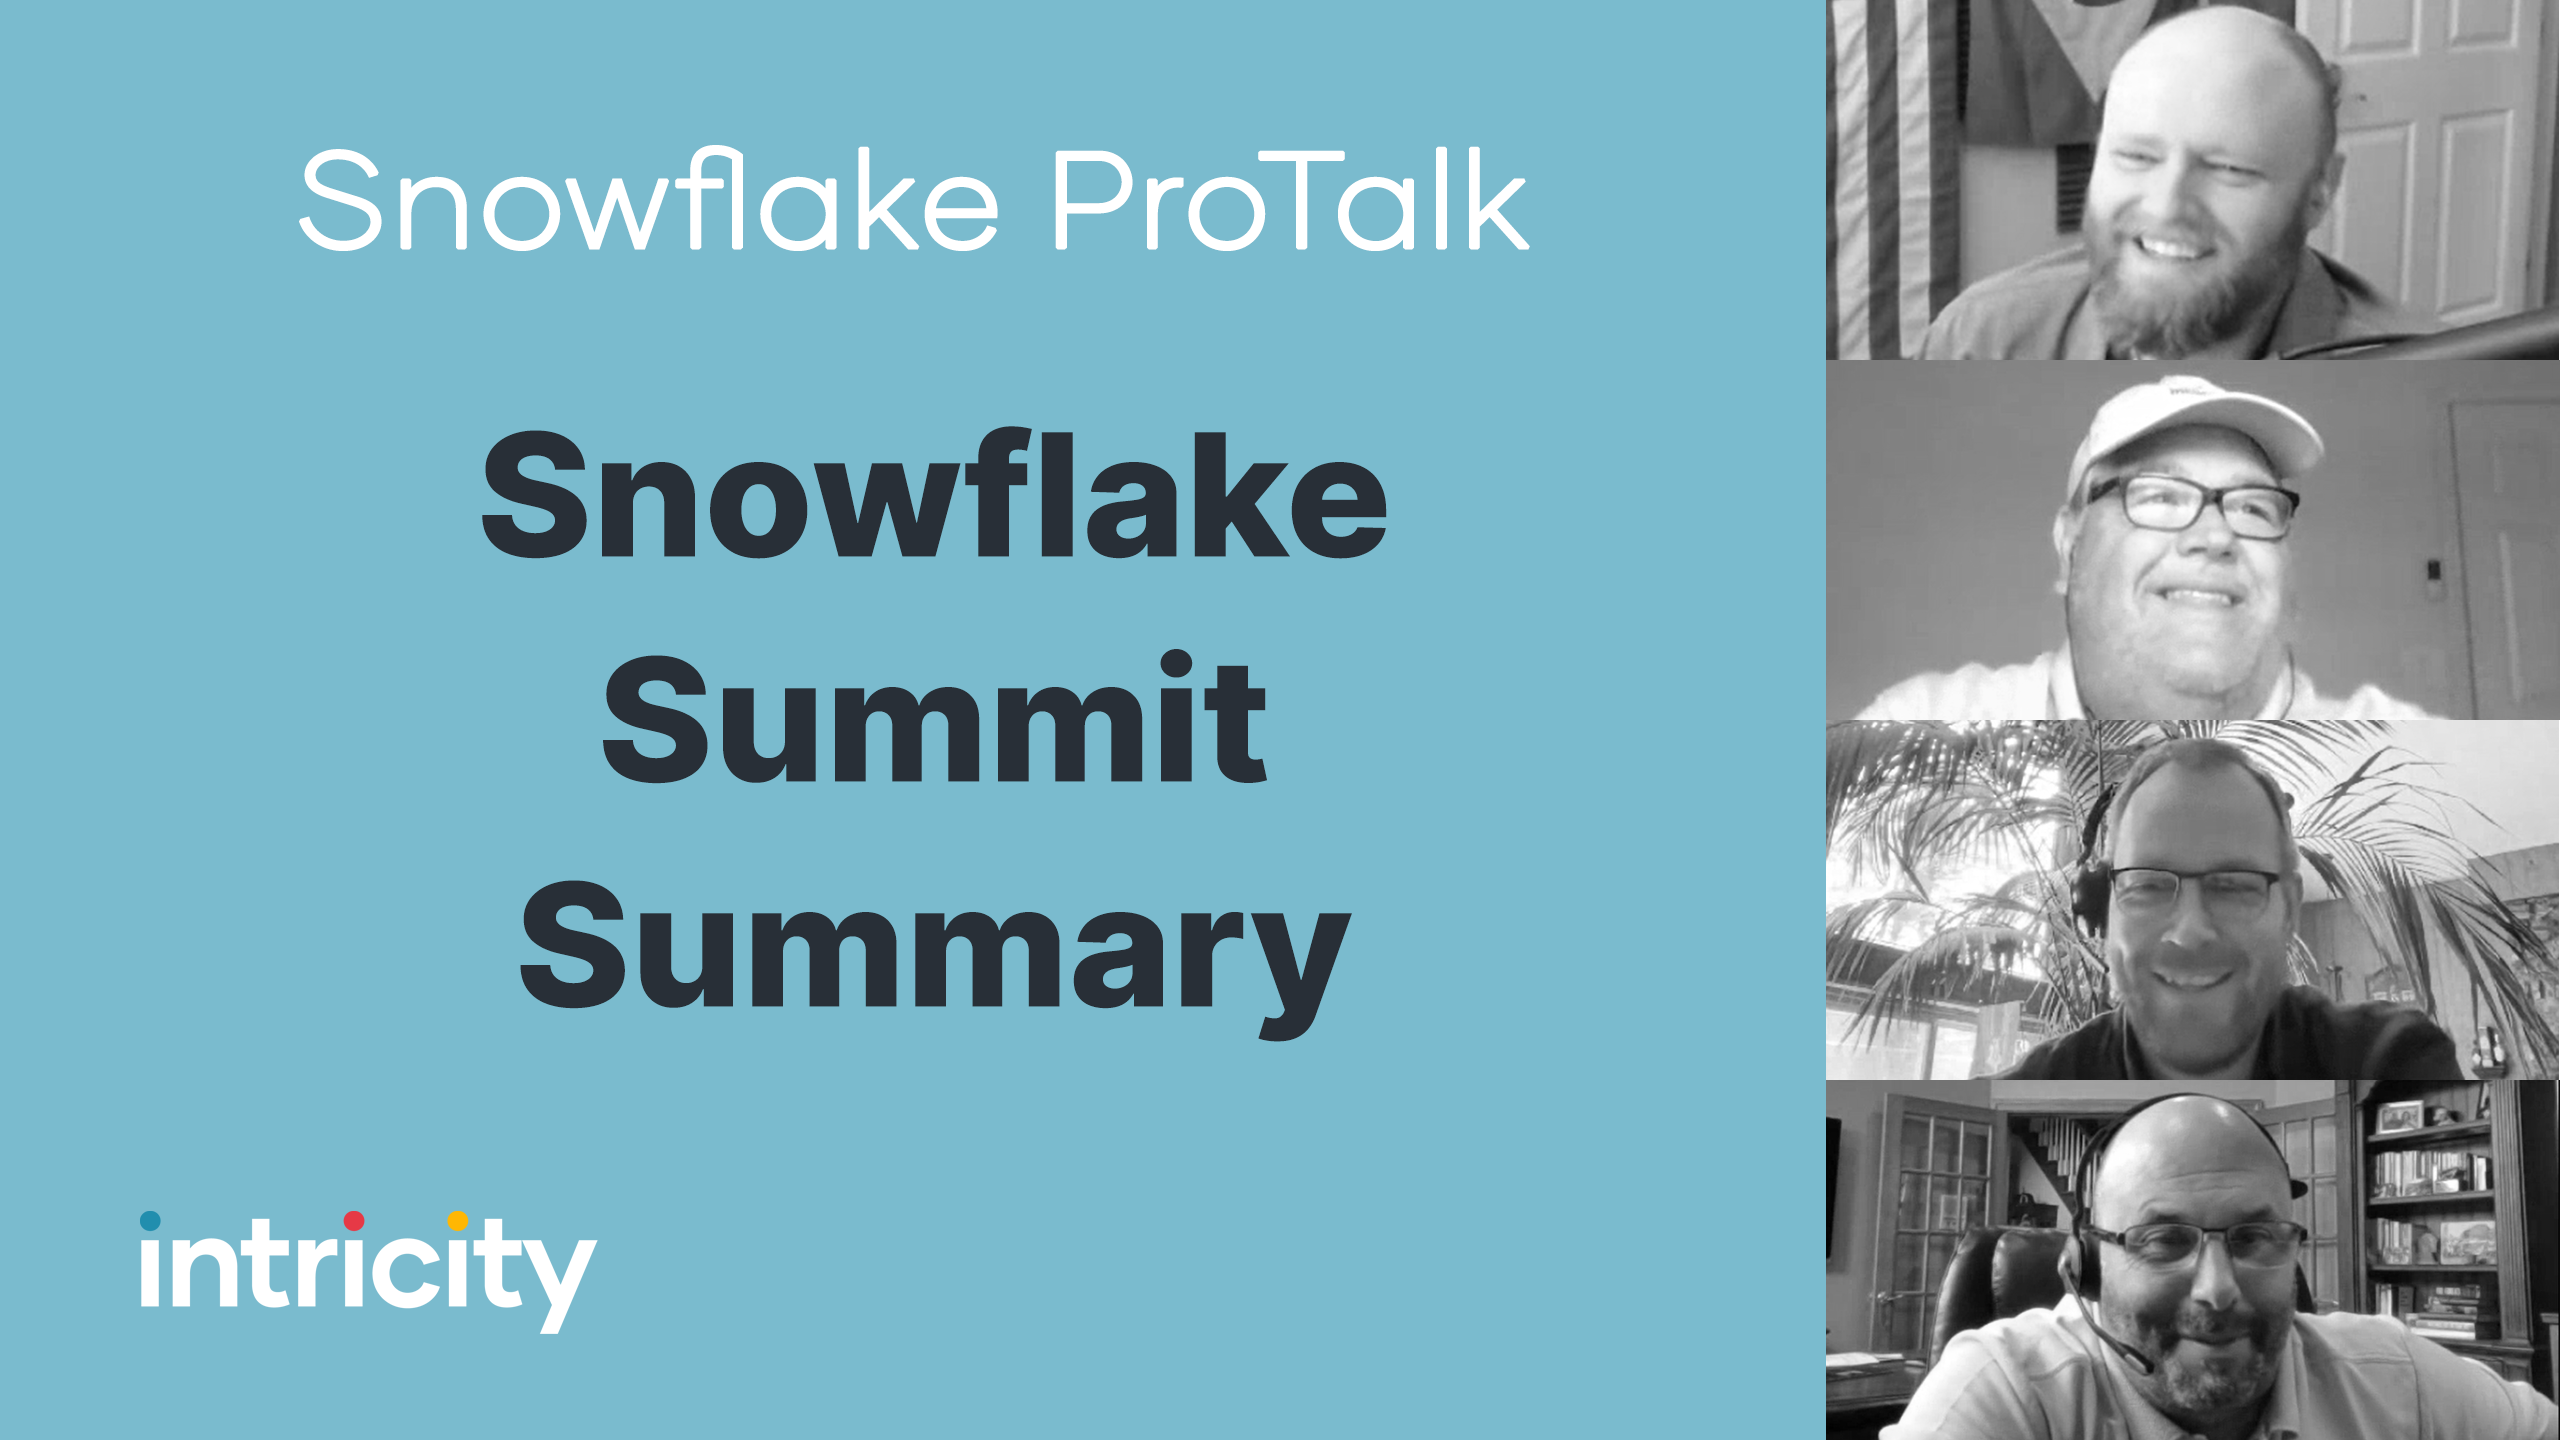 Snowflake ProTalk Snowflake summit summary